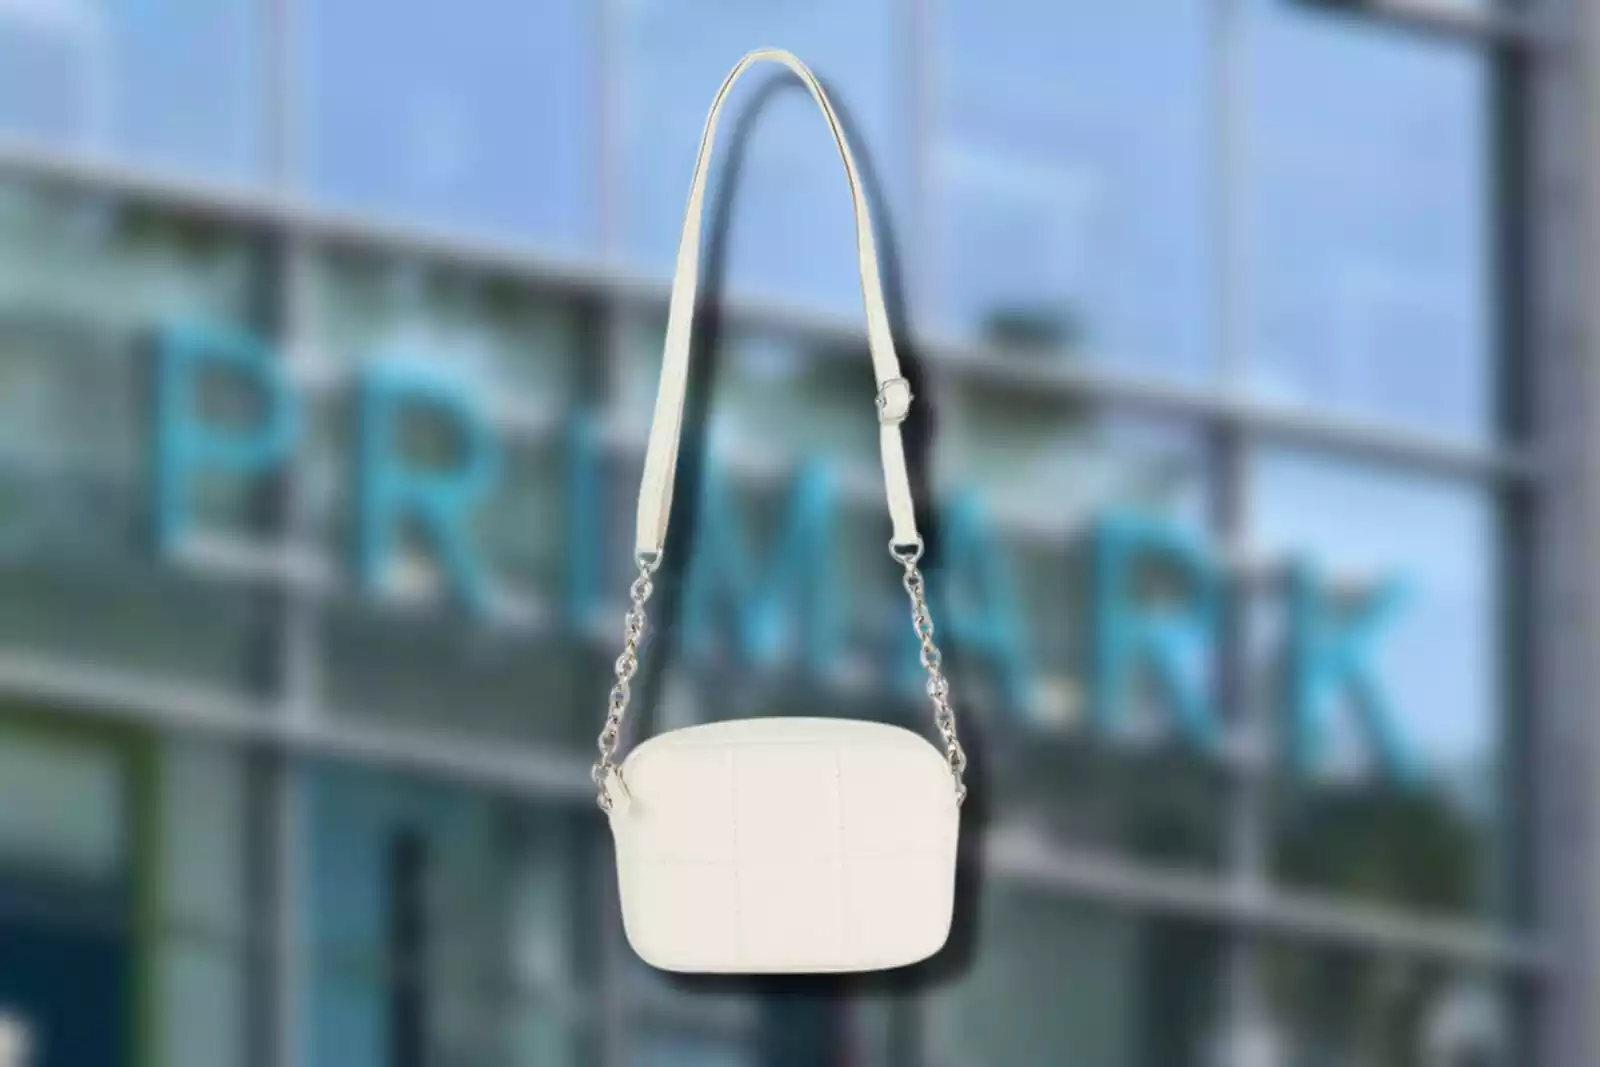 Parece de Gucci pero es de Primark: el bolso de 16 € que podría pasar por gama